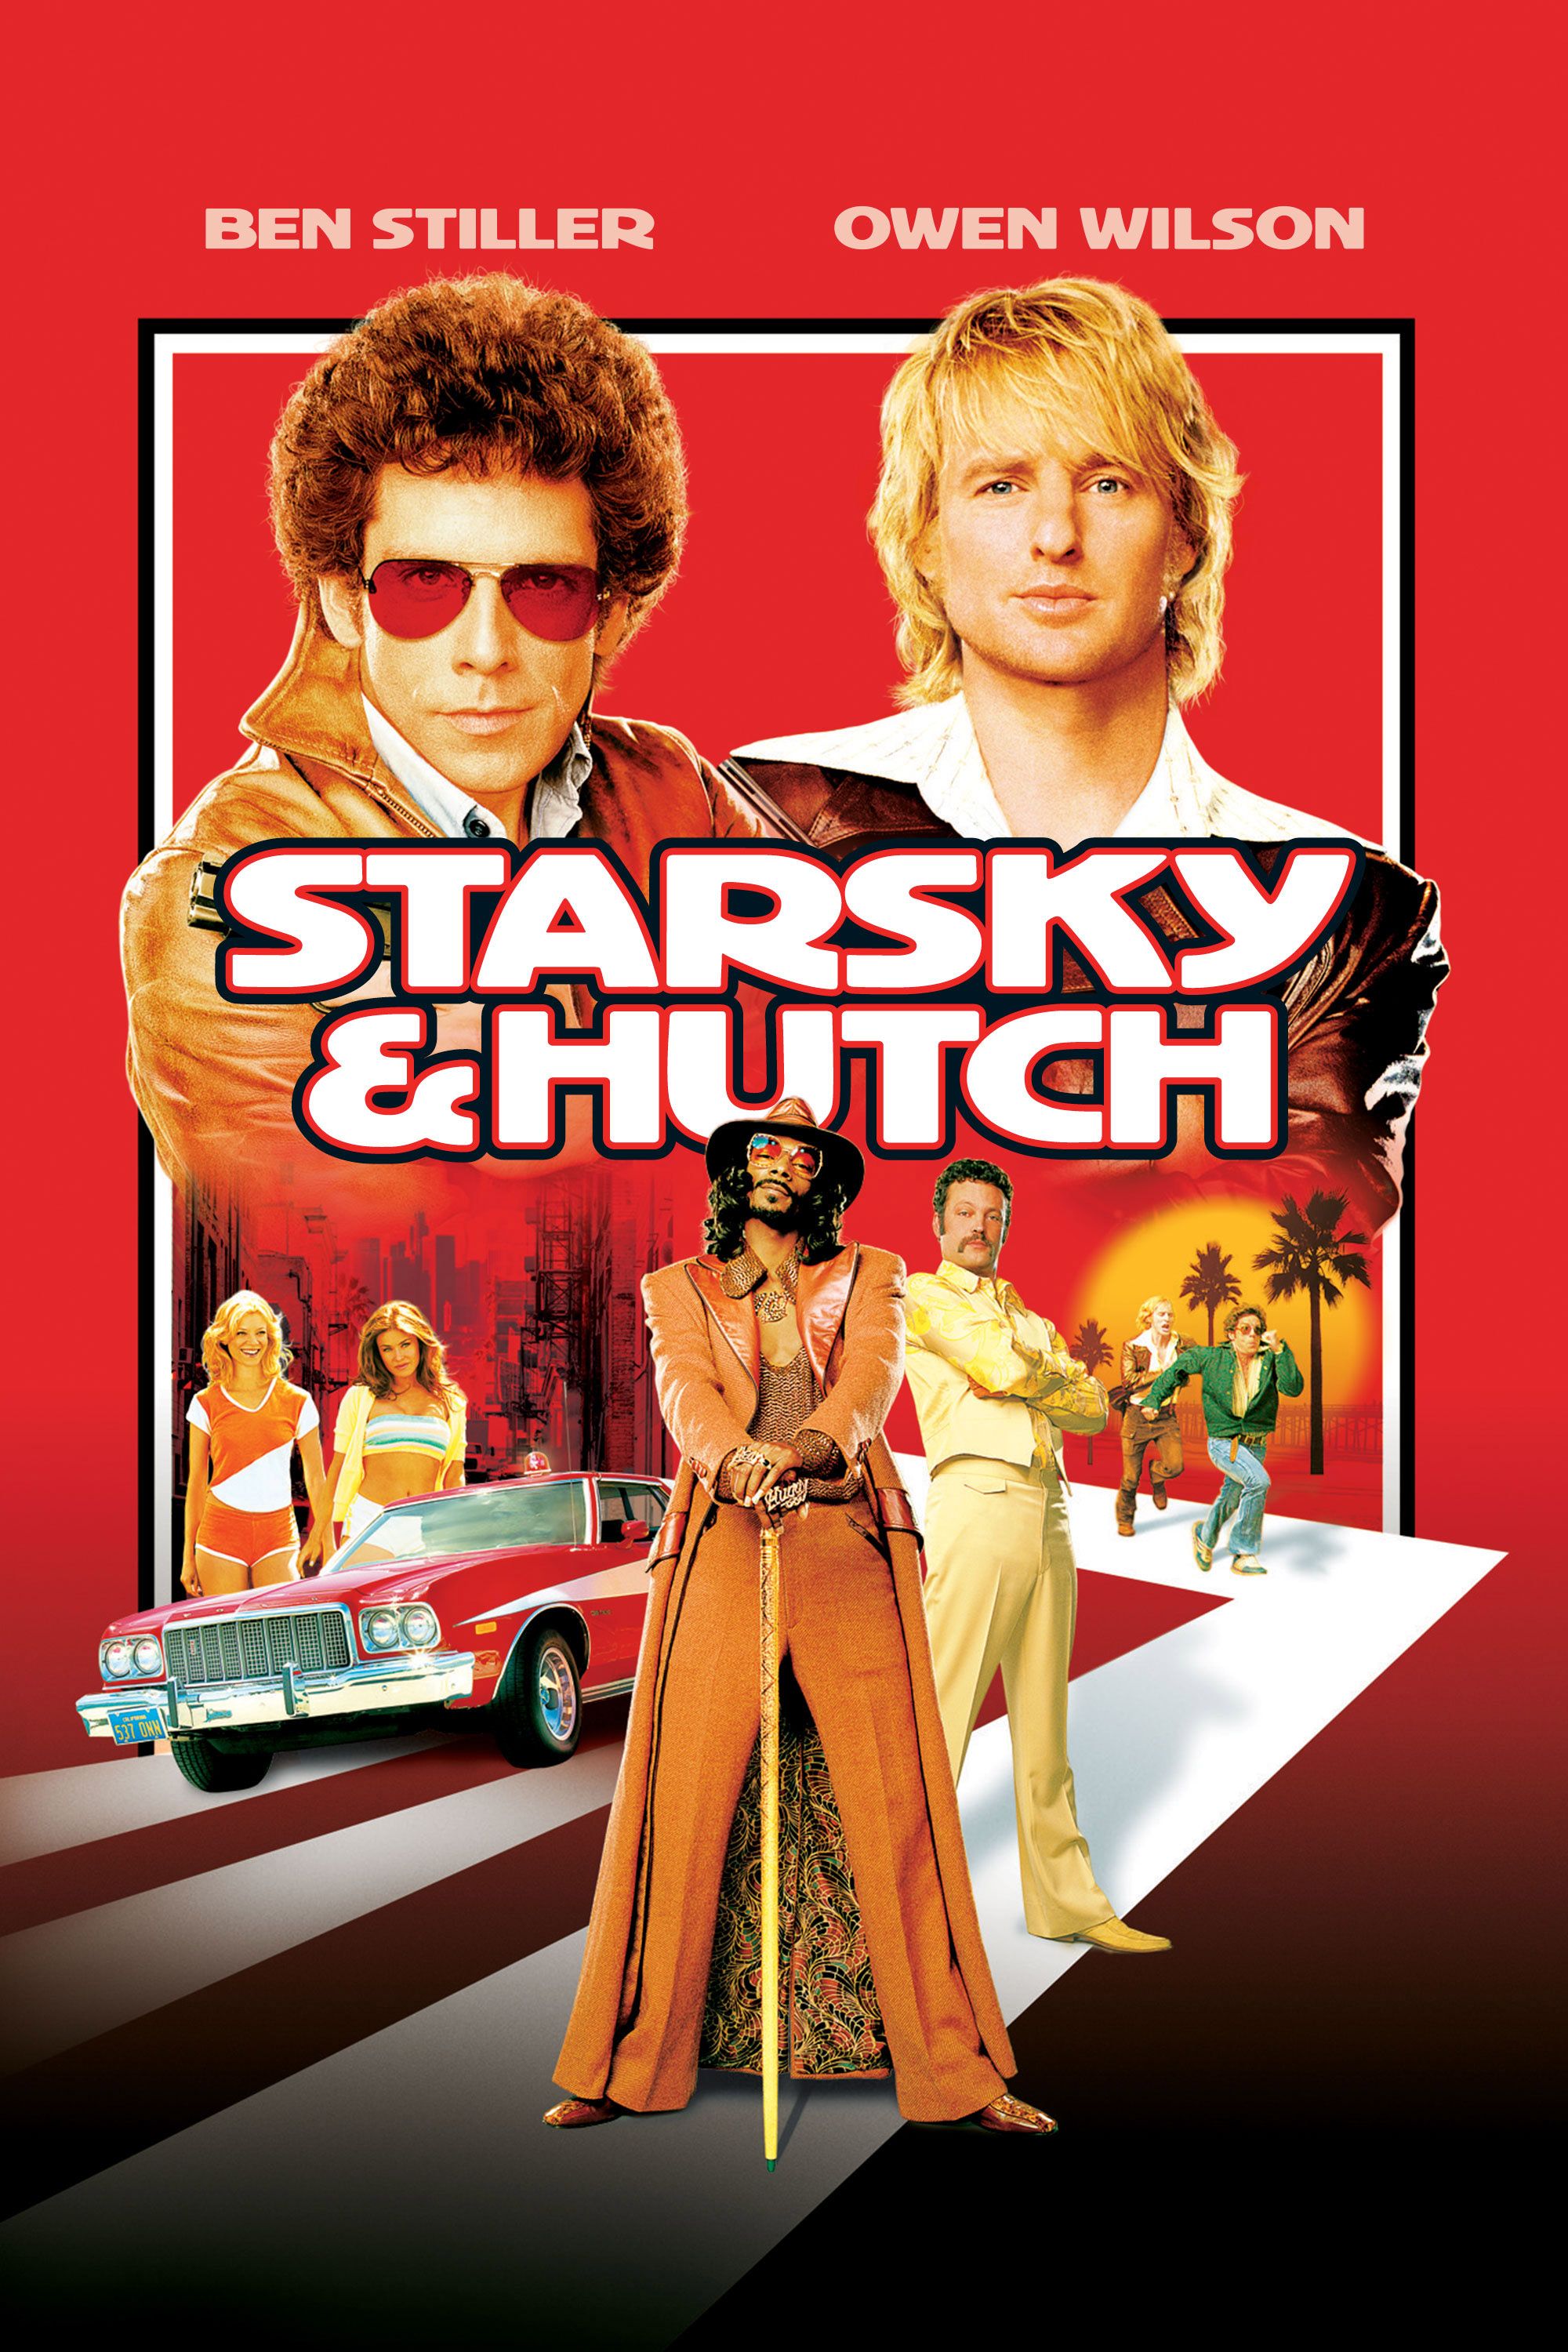 Starsky & Hutch (2004) - Movie - Where To Watch